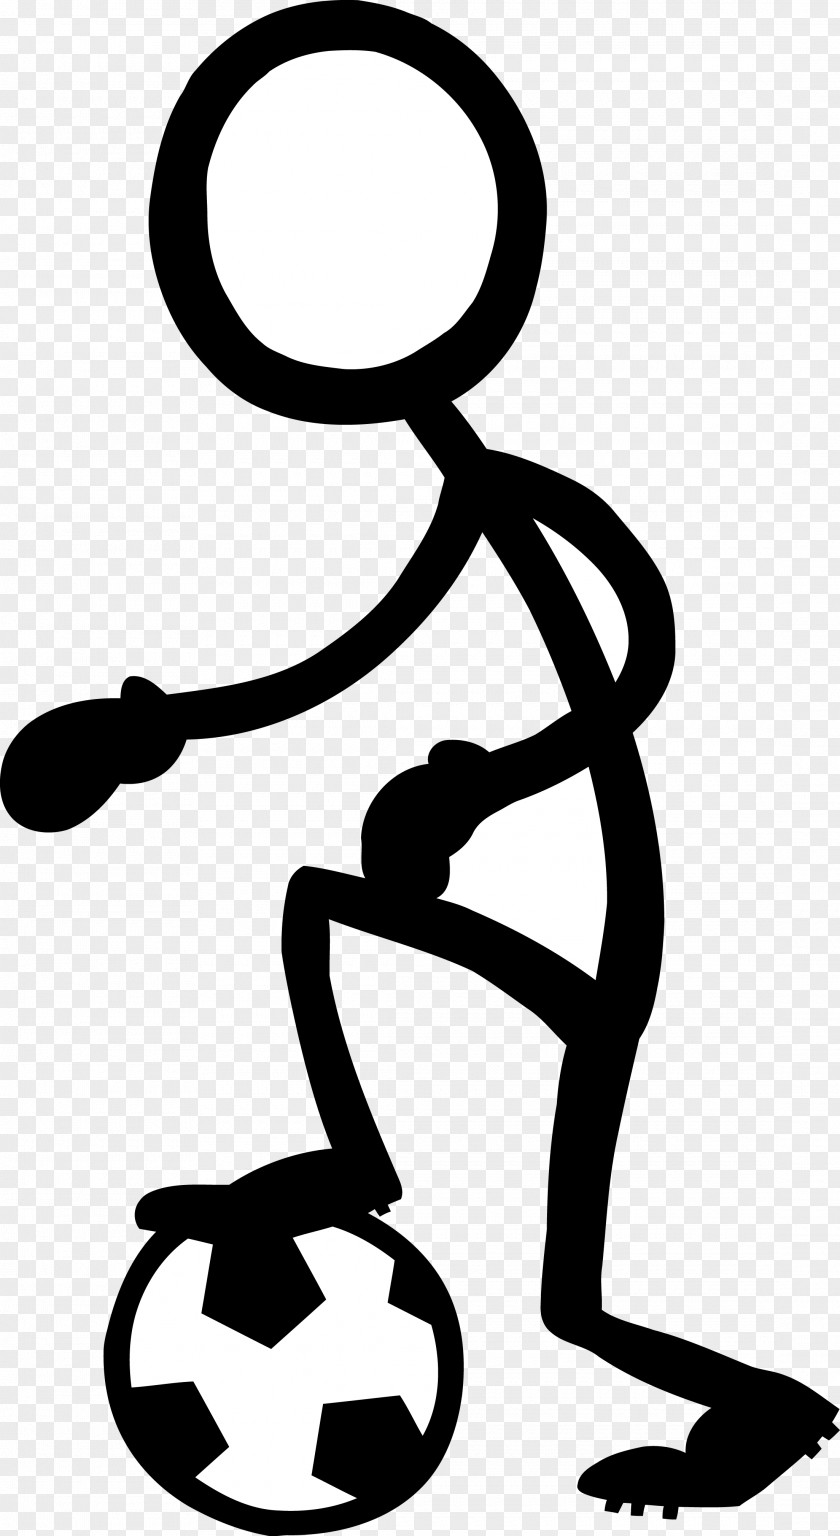 Football Villain Stick Figure Drawing Clip Art PNG